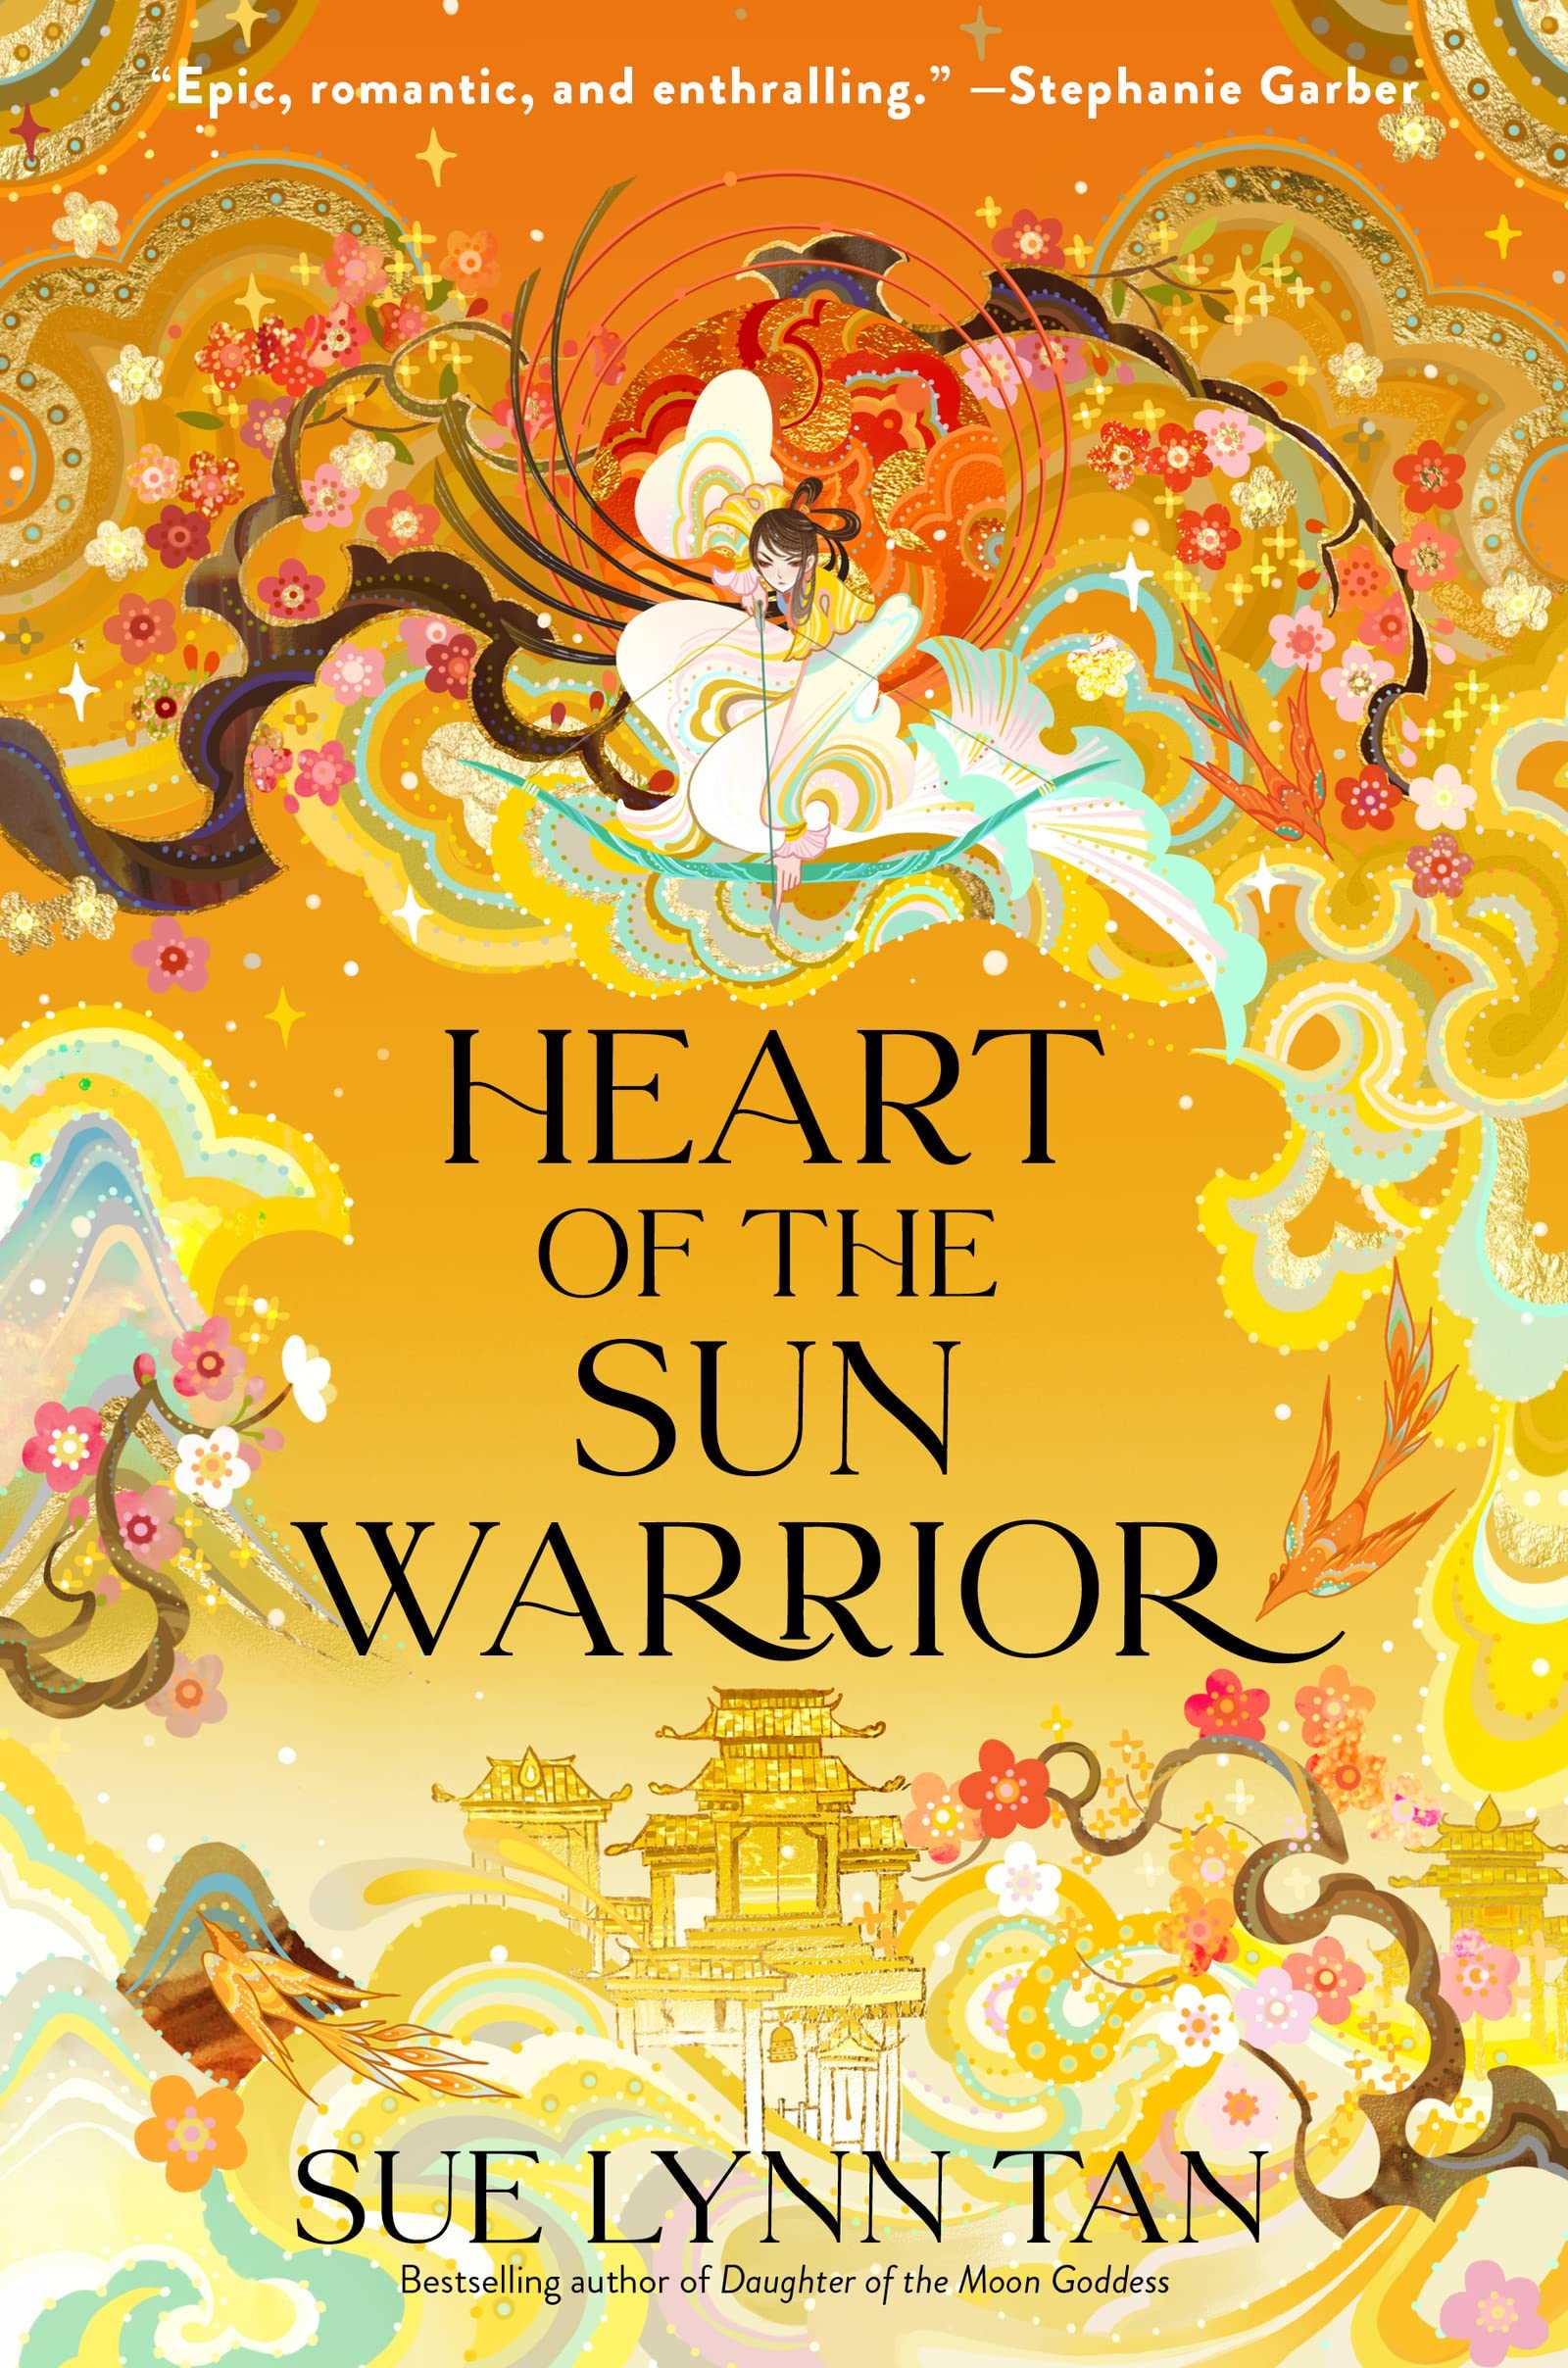 Heart of the Sun Warrior (Celestial Kingdom #02)